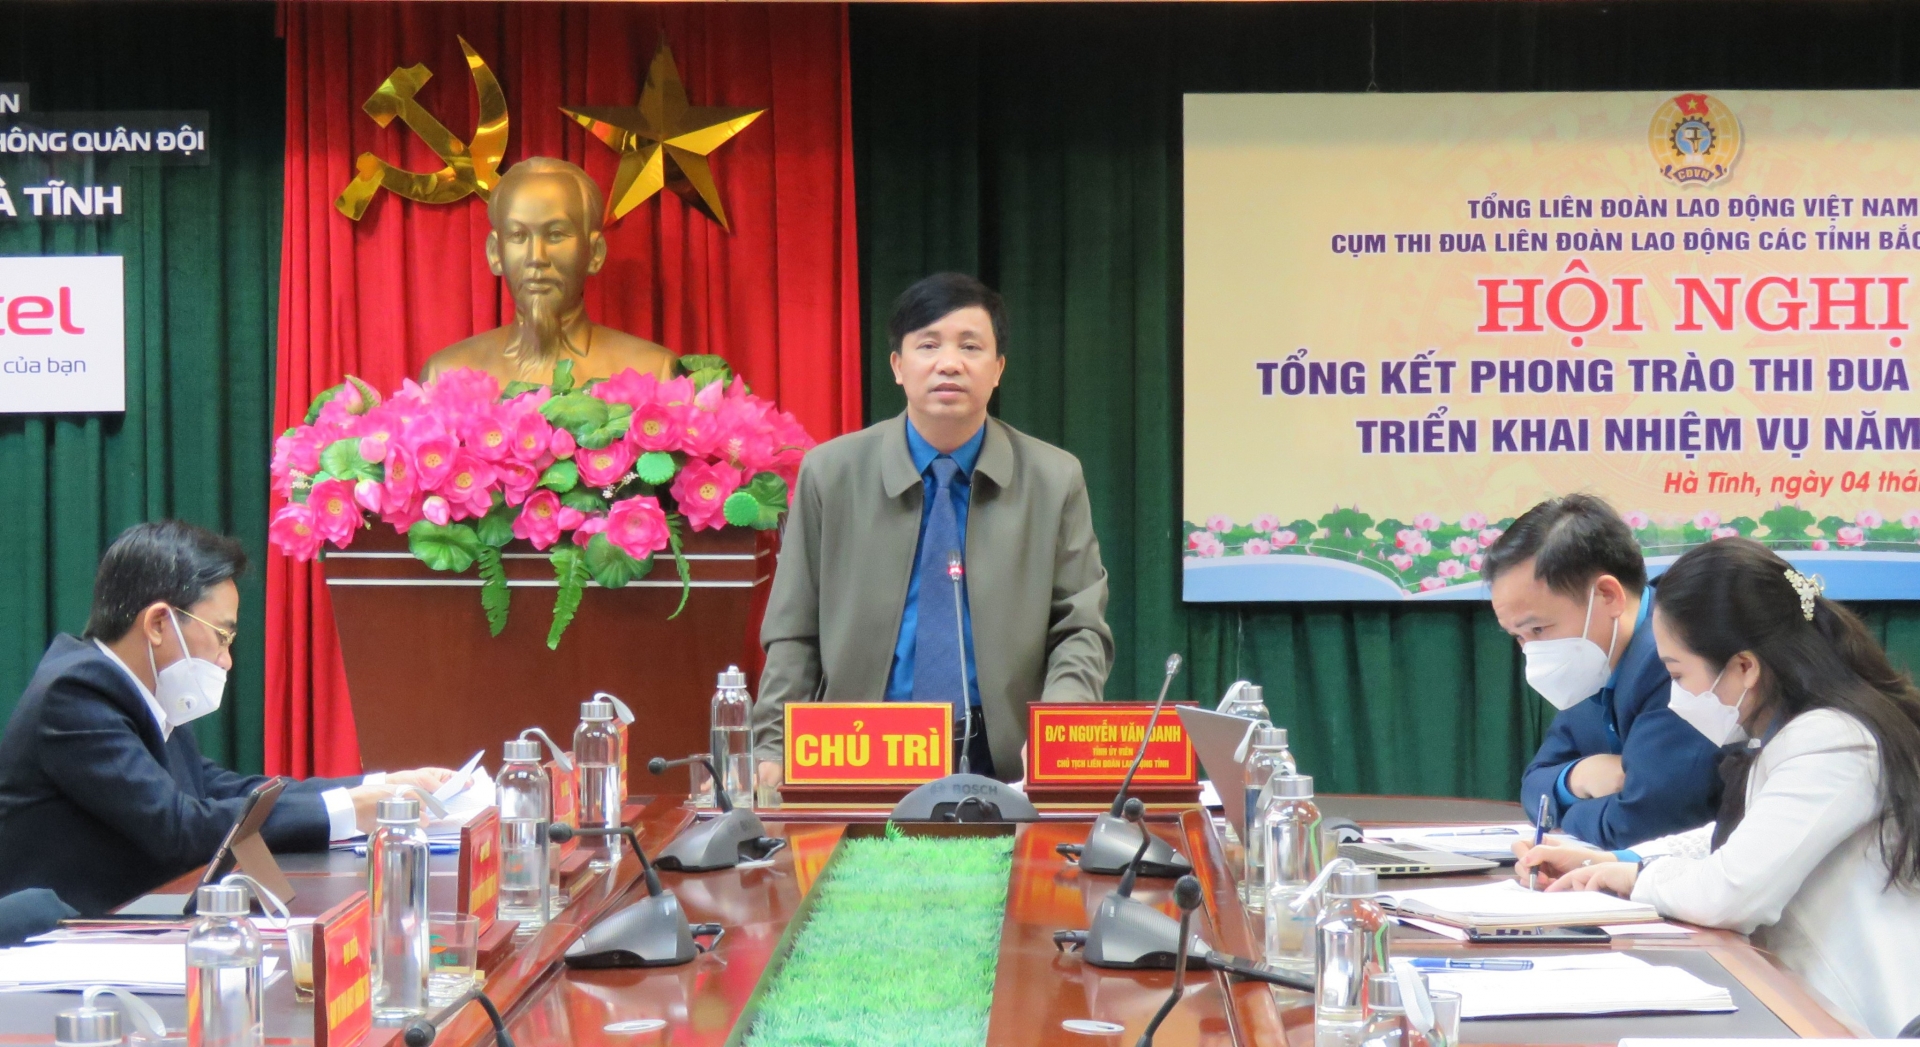 Cụm thi đua LĐLĐ các tỉnh Bắc Trung bộ tổ chức hội nghị tổng kết năm 2021